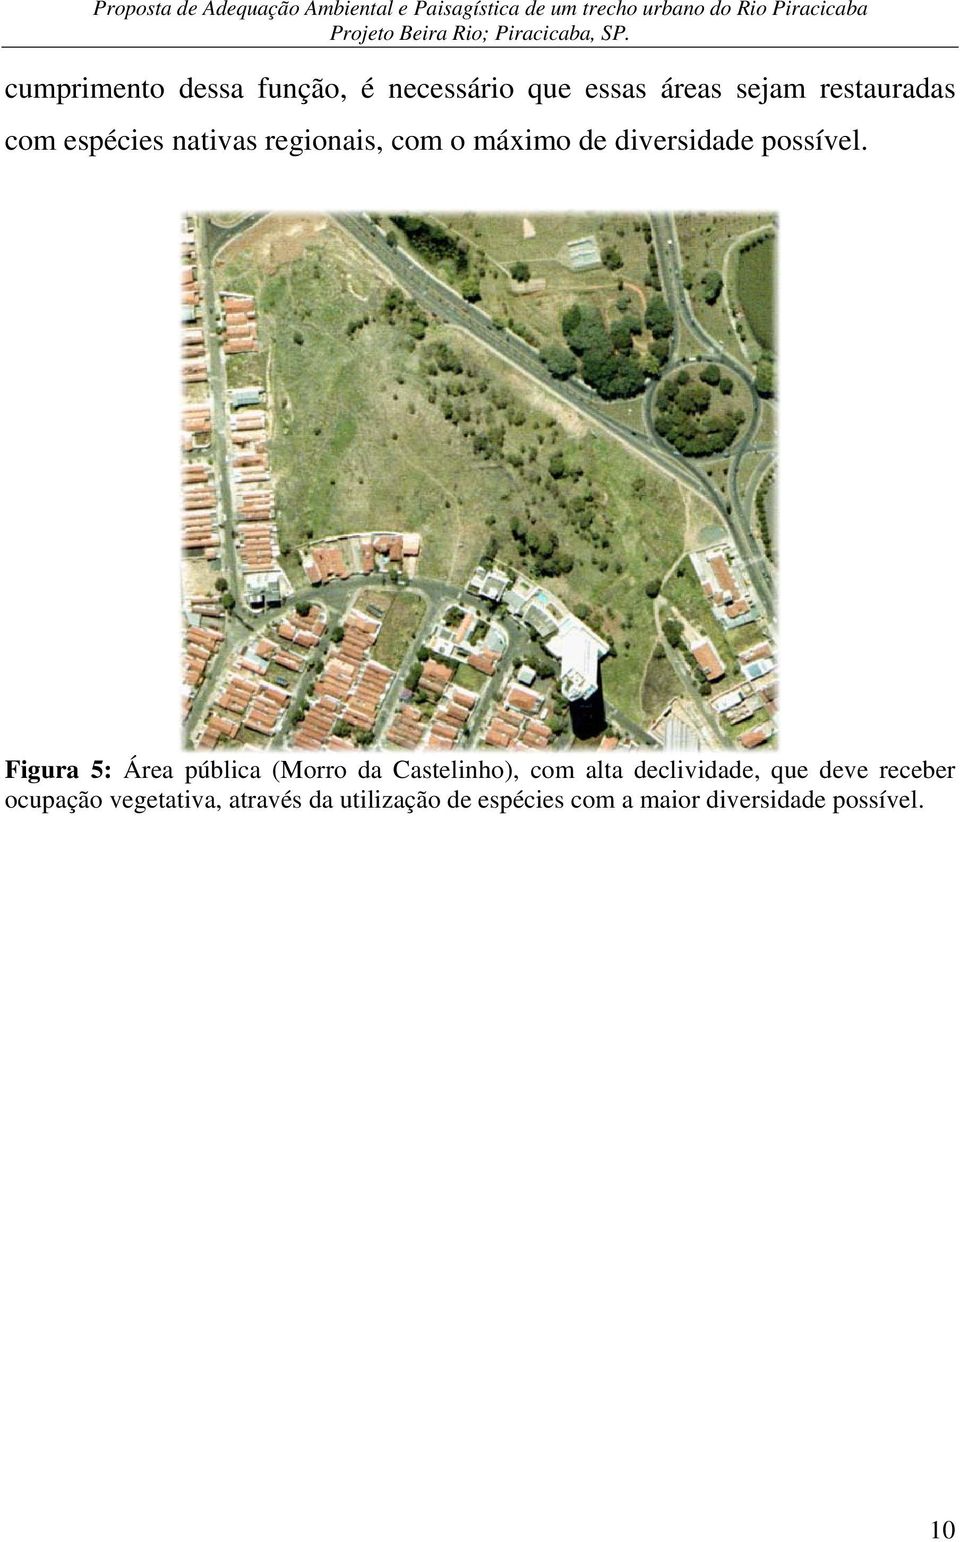 Figura 5: Área pública (Morro da Castelinho), com alta declividade, que deve